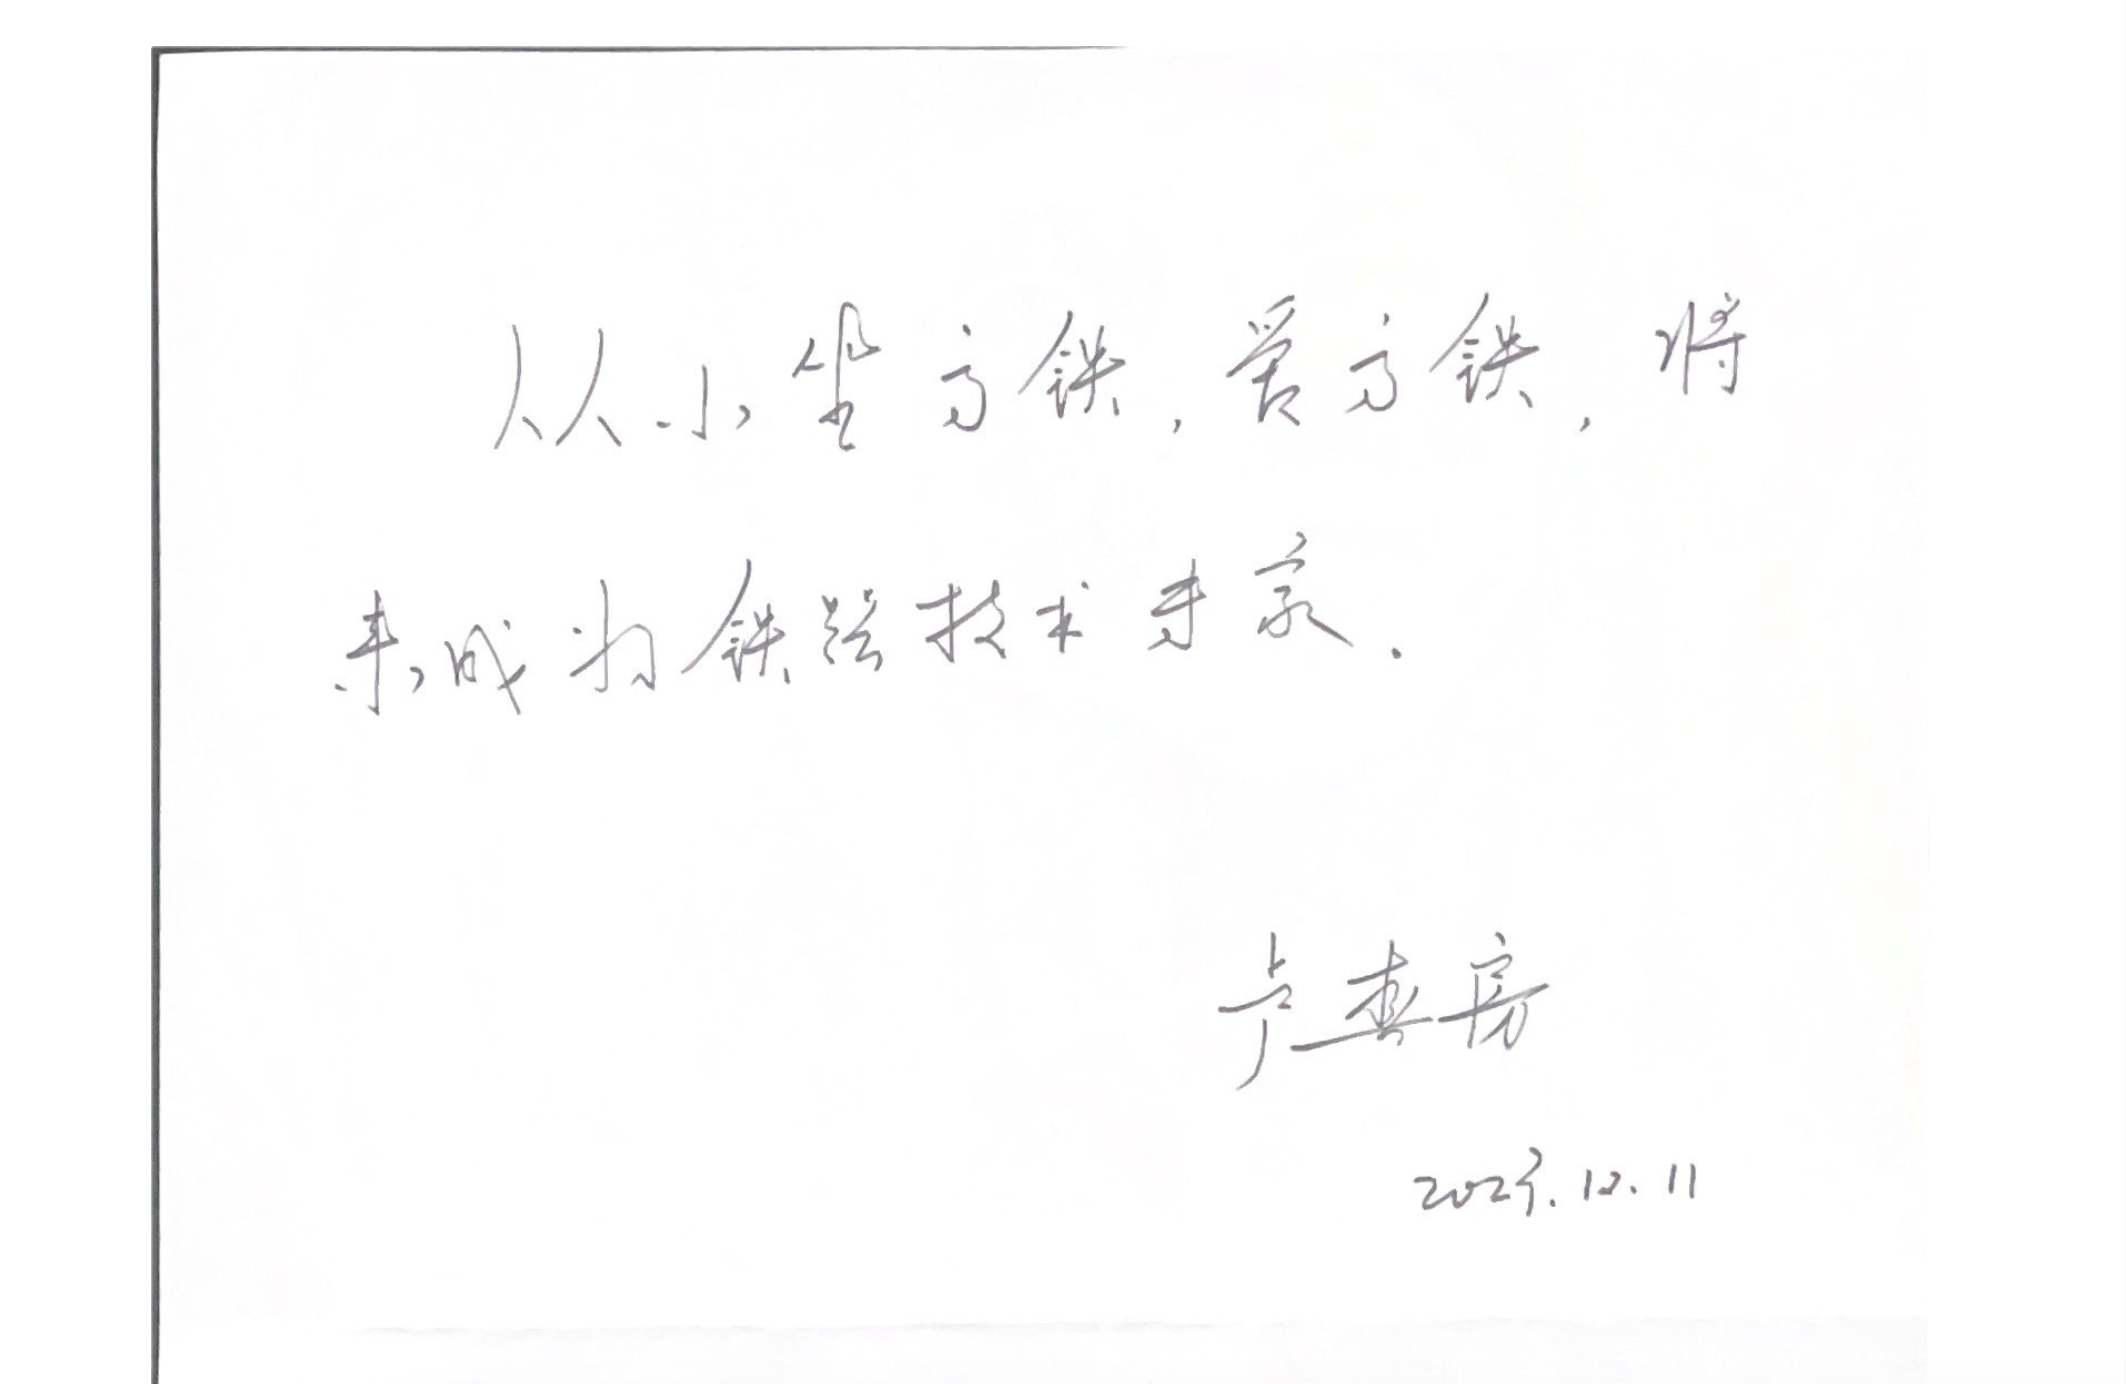 盧春房給孩子們的手寫寄語。新京報記者 馮琪 攝